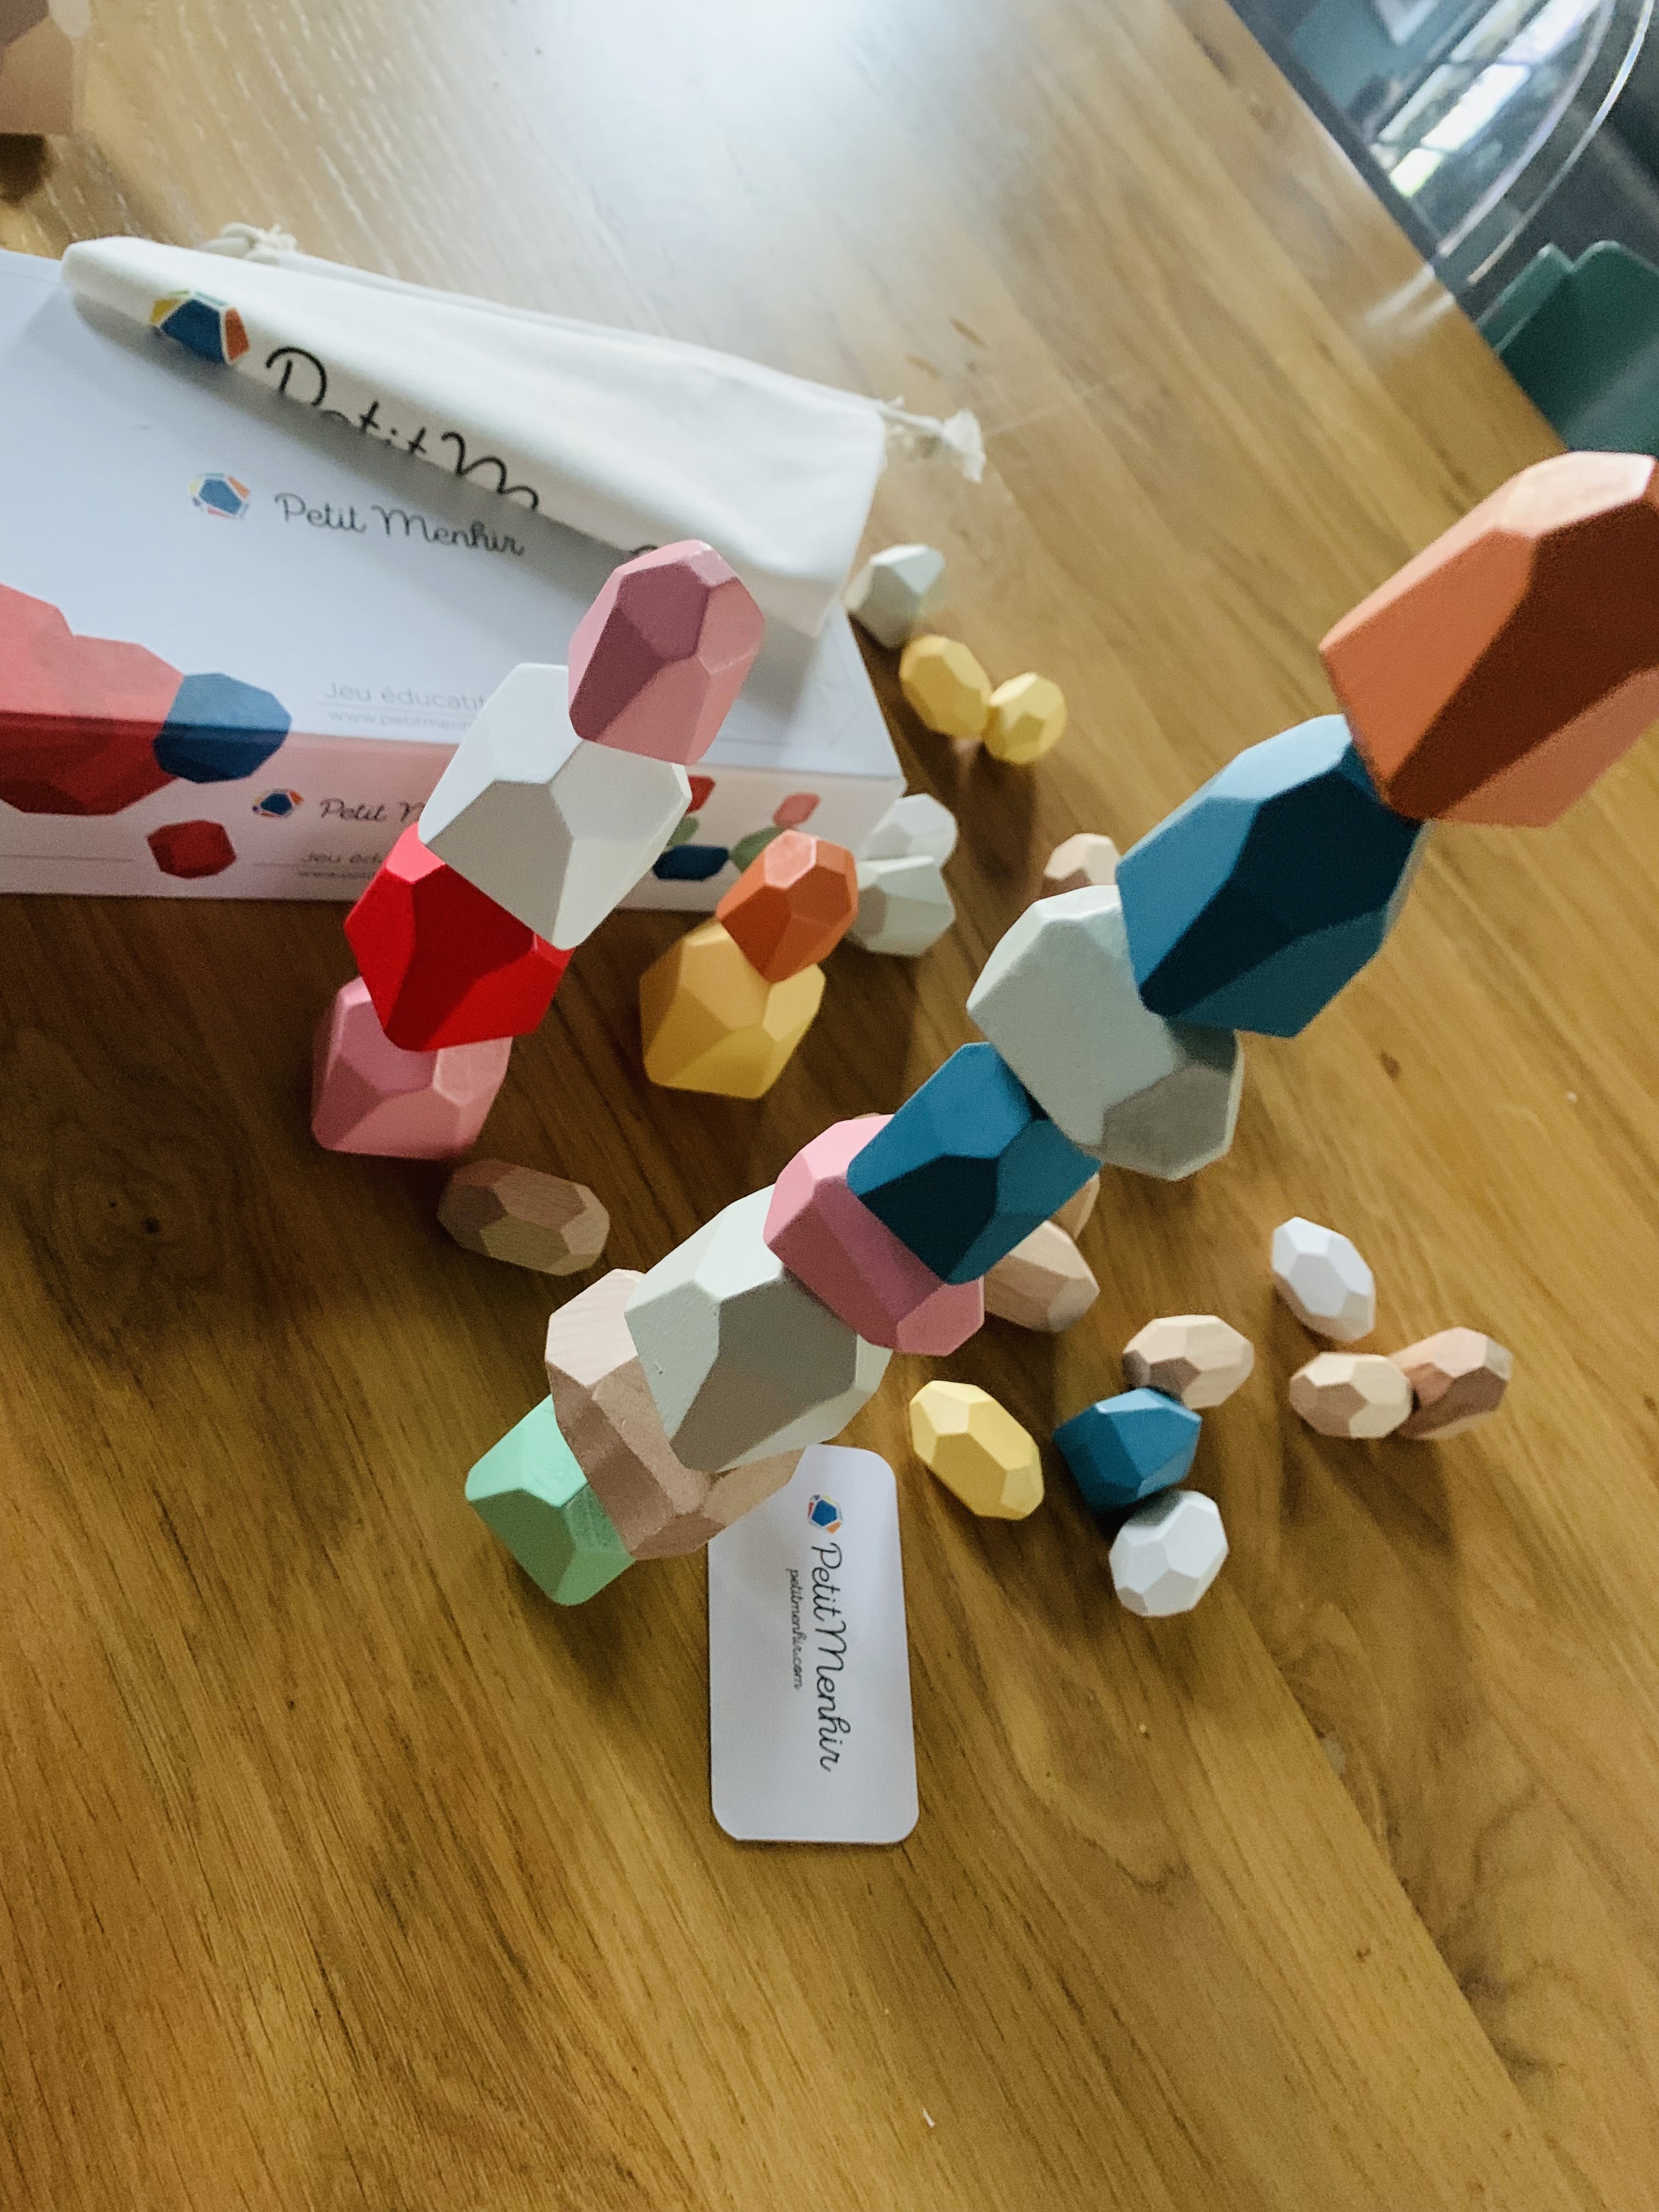 Jeu de stacking de Menhirs en bois personnalisable - Jouet Montessori –  lespetitscitrons